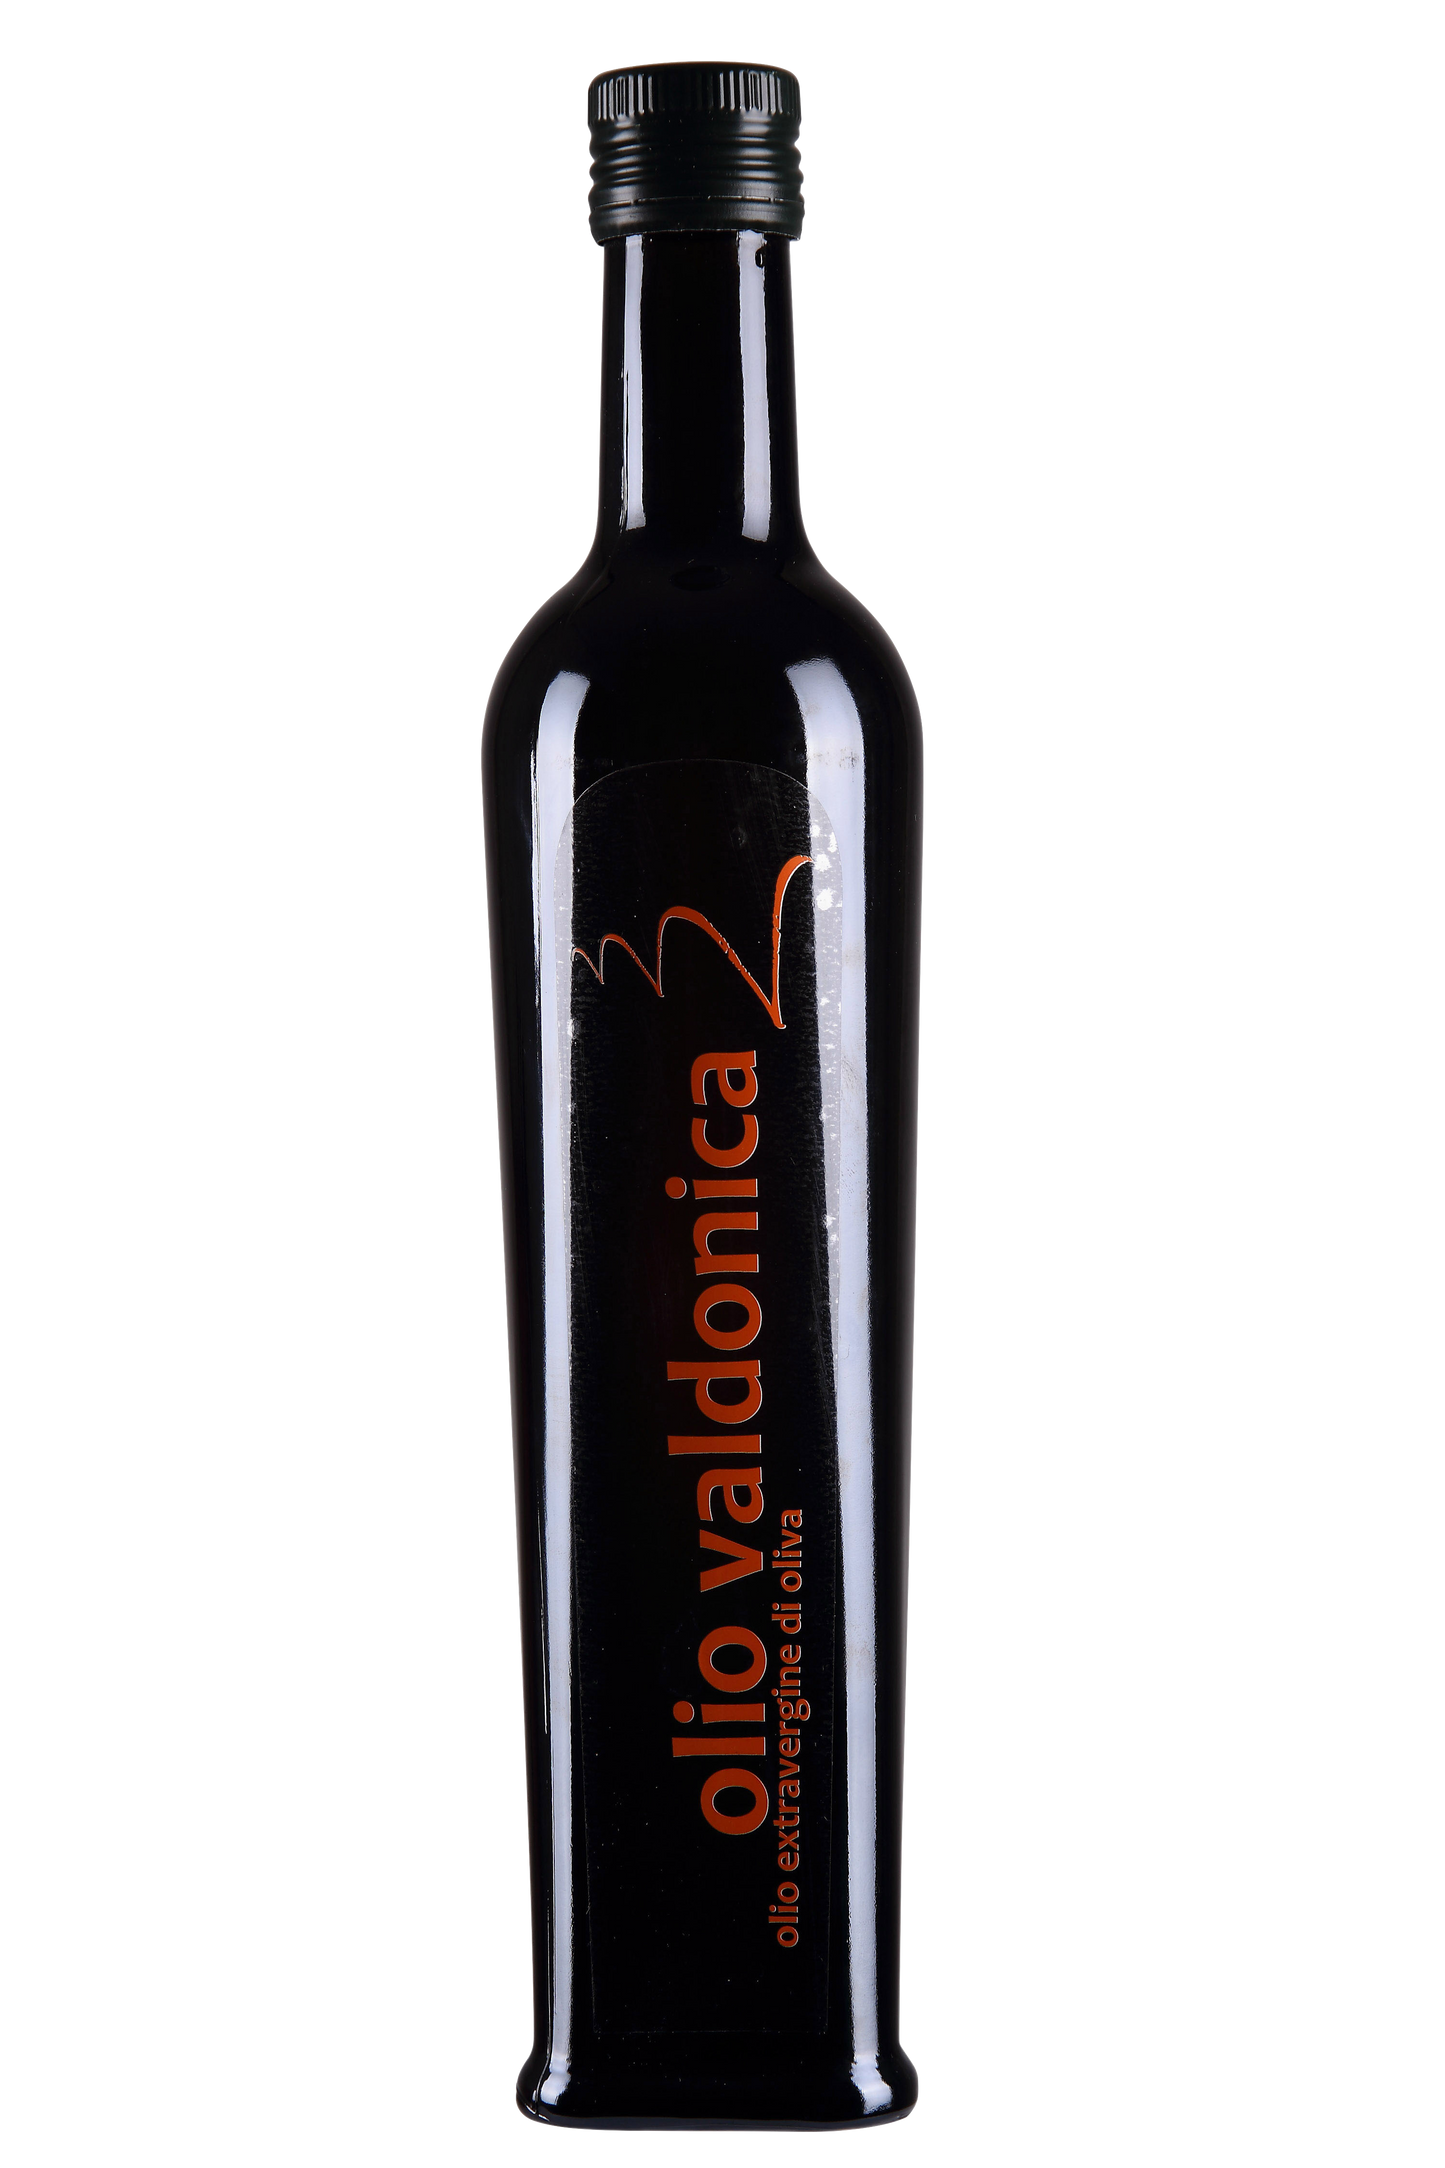 VALDONICA Extra Virgin Olive Oil - 6 Bottles